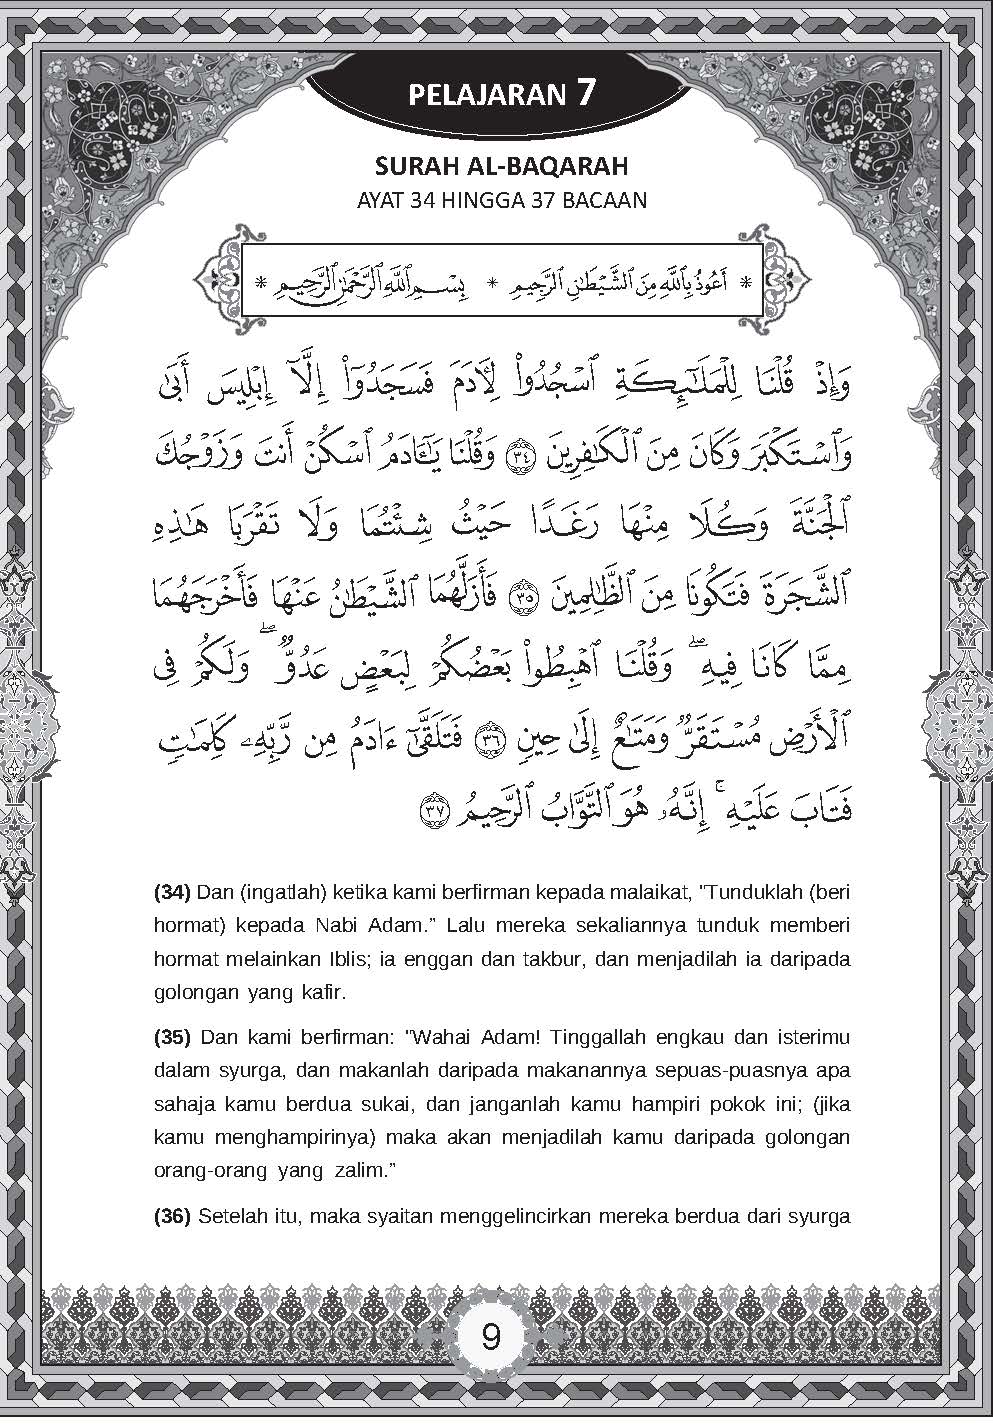 Pendidikan Islam - Ayat Bacaan, Hafazan & Hadis Tingkatan 1,2 & 3 (Nota Poket) - (TBBS1095)